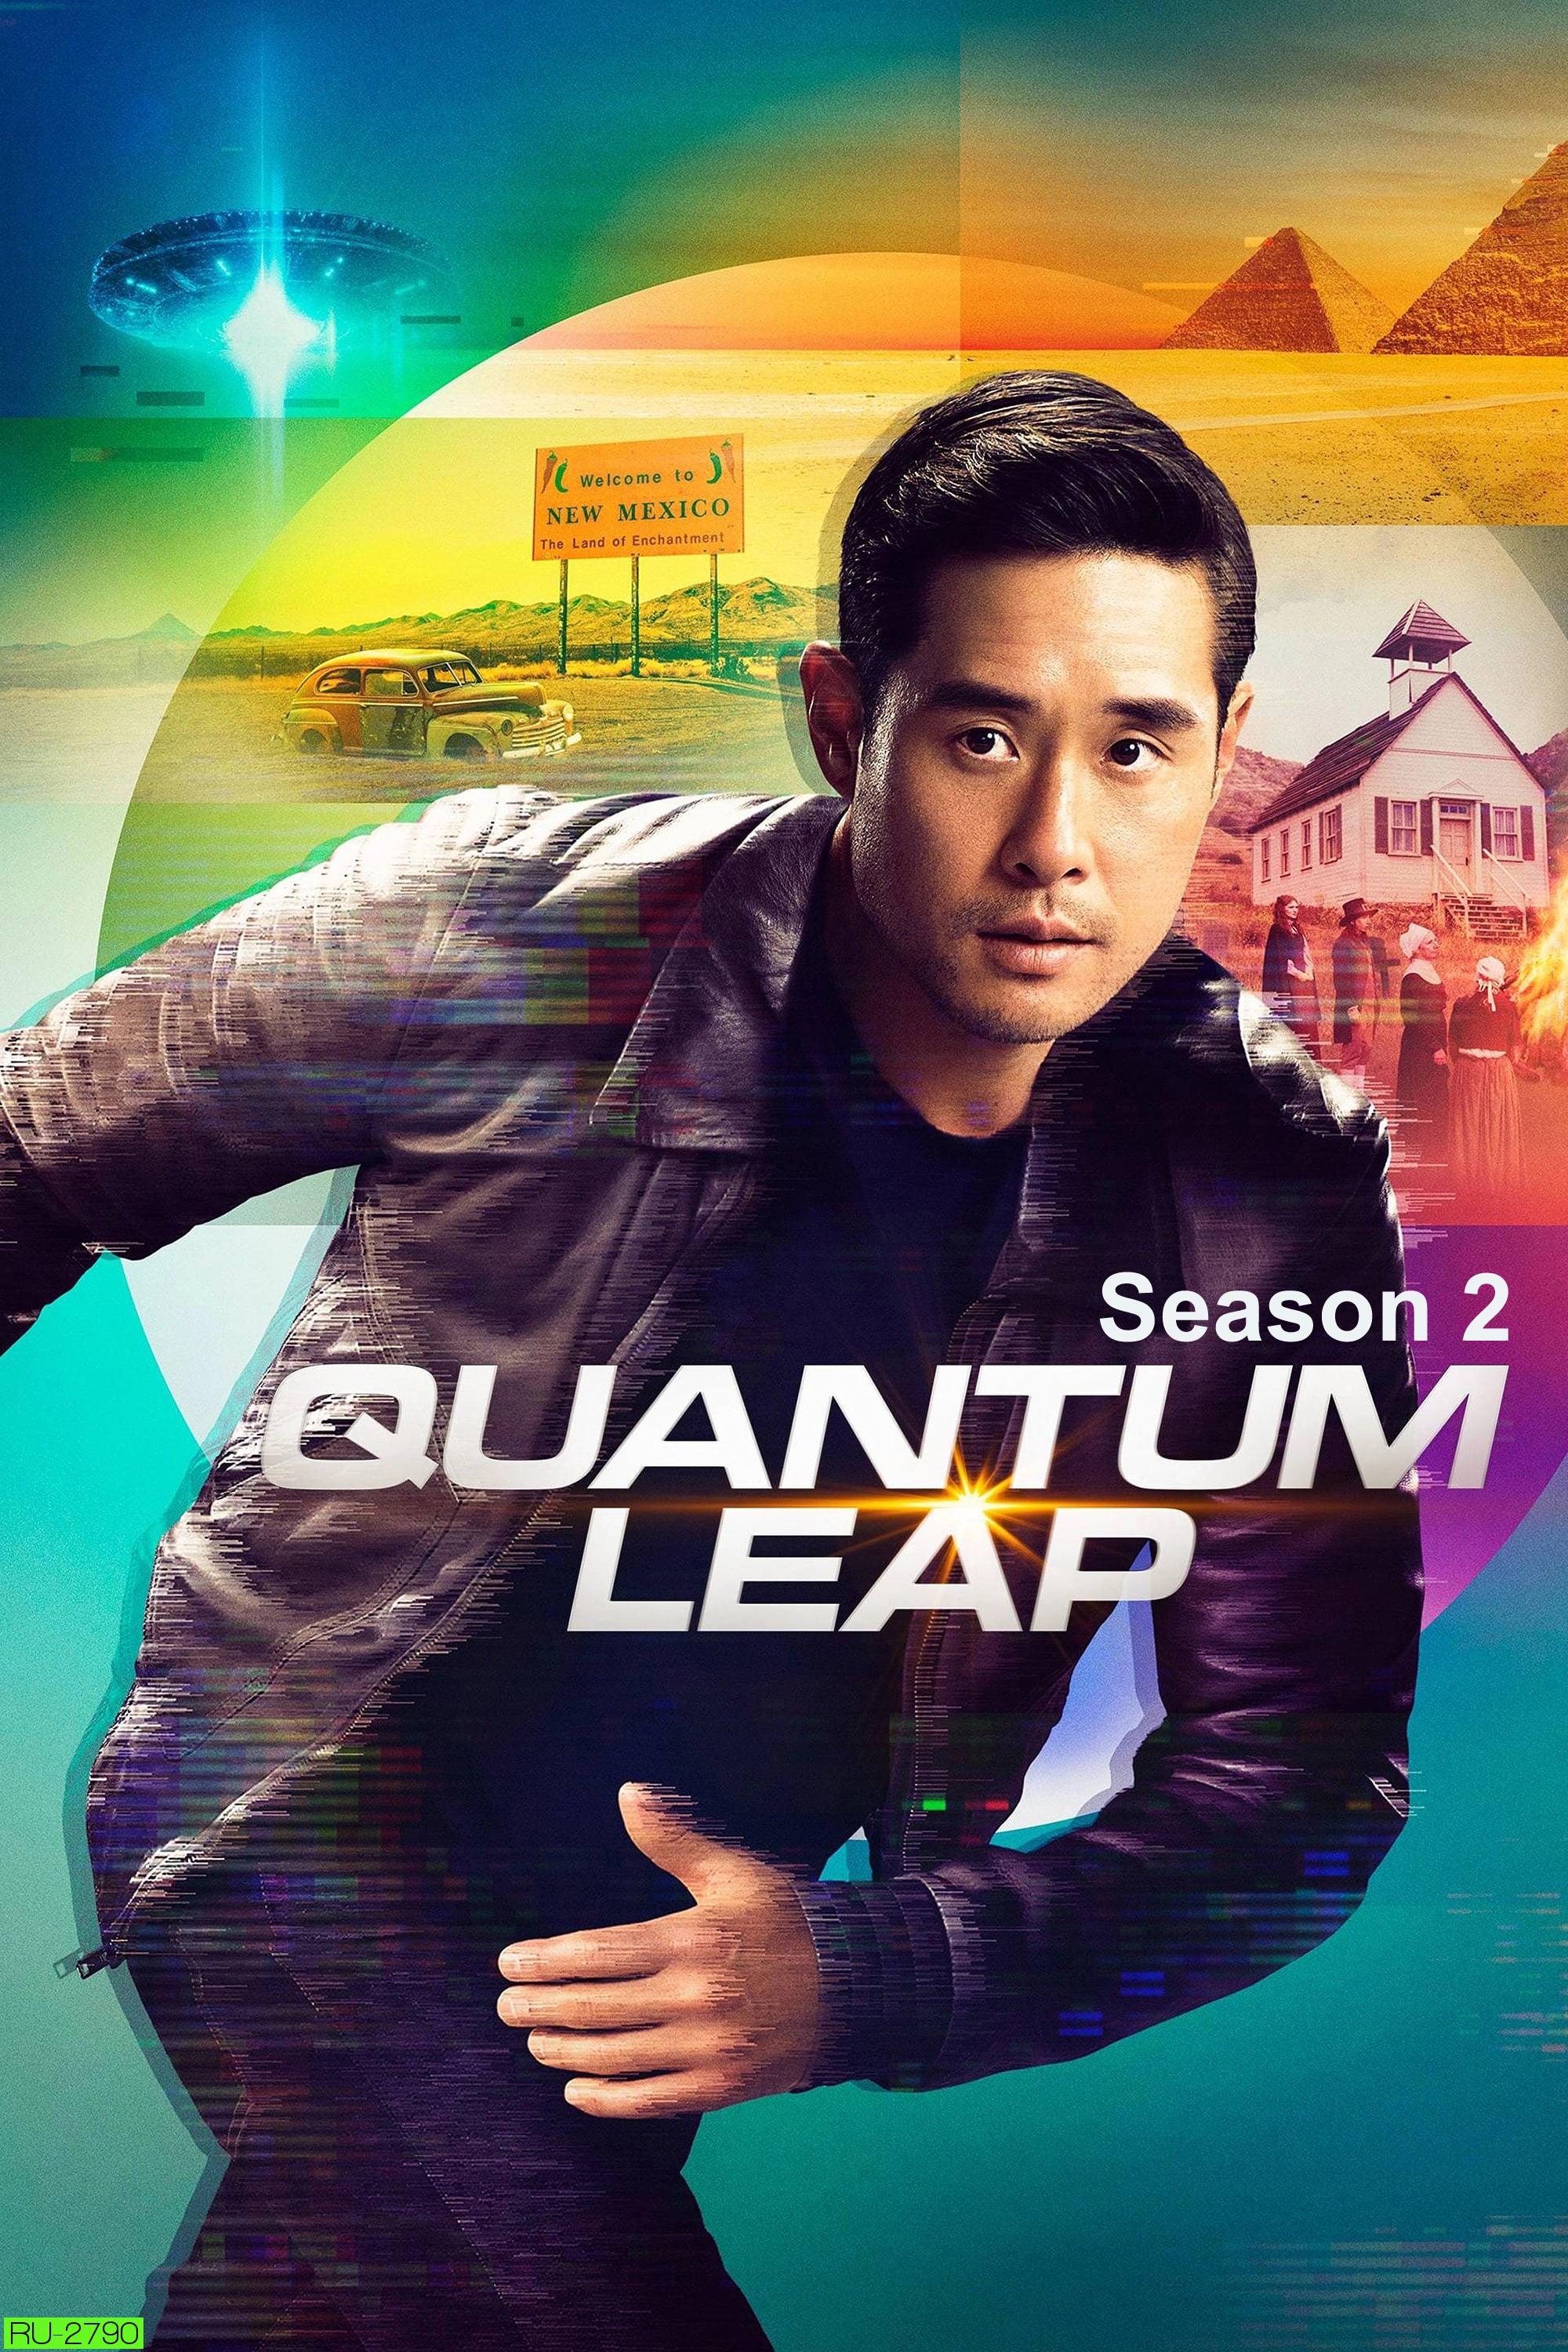 Quantum Leap Season 2 (2023) ควอนตัมลีป กระโดดข้ามเวลา ปี 2 (8 ตอน)